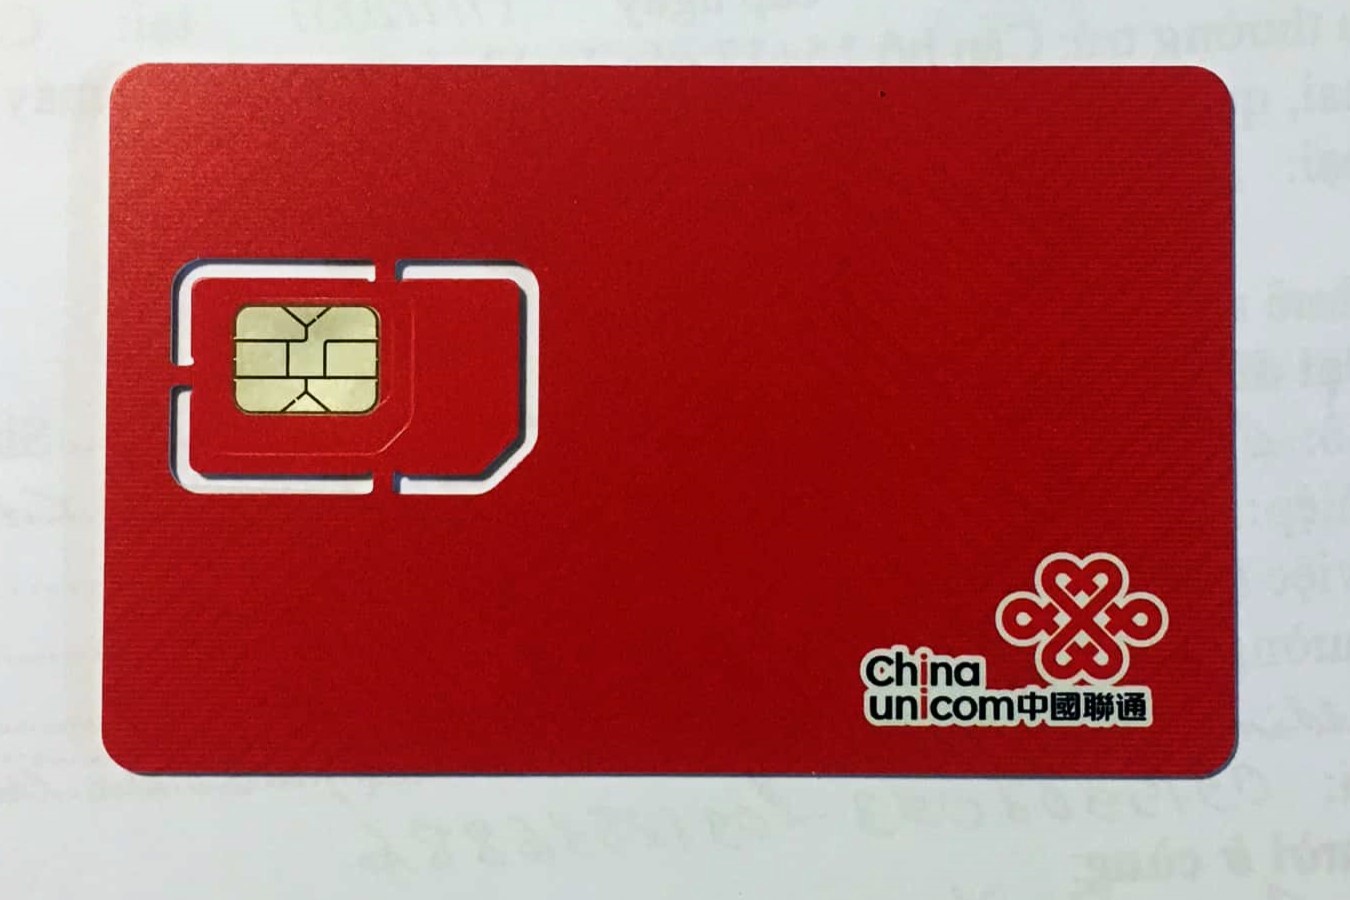 activating-china-unicom-sim-card-a-comprehensive-guide